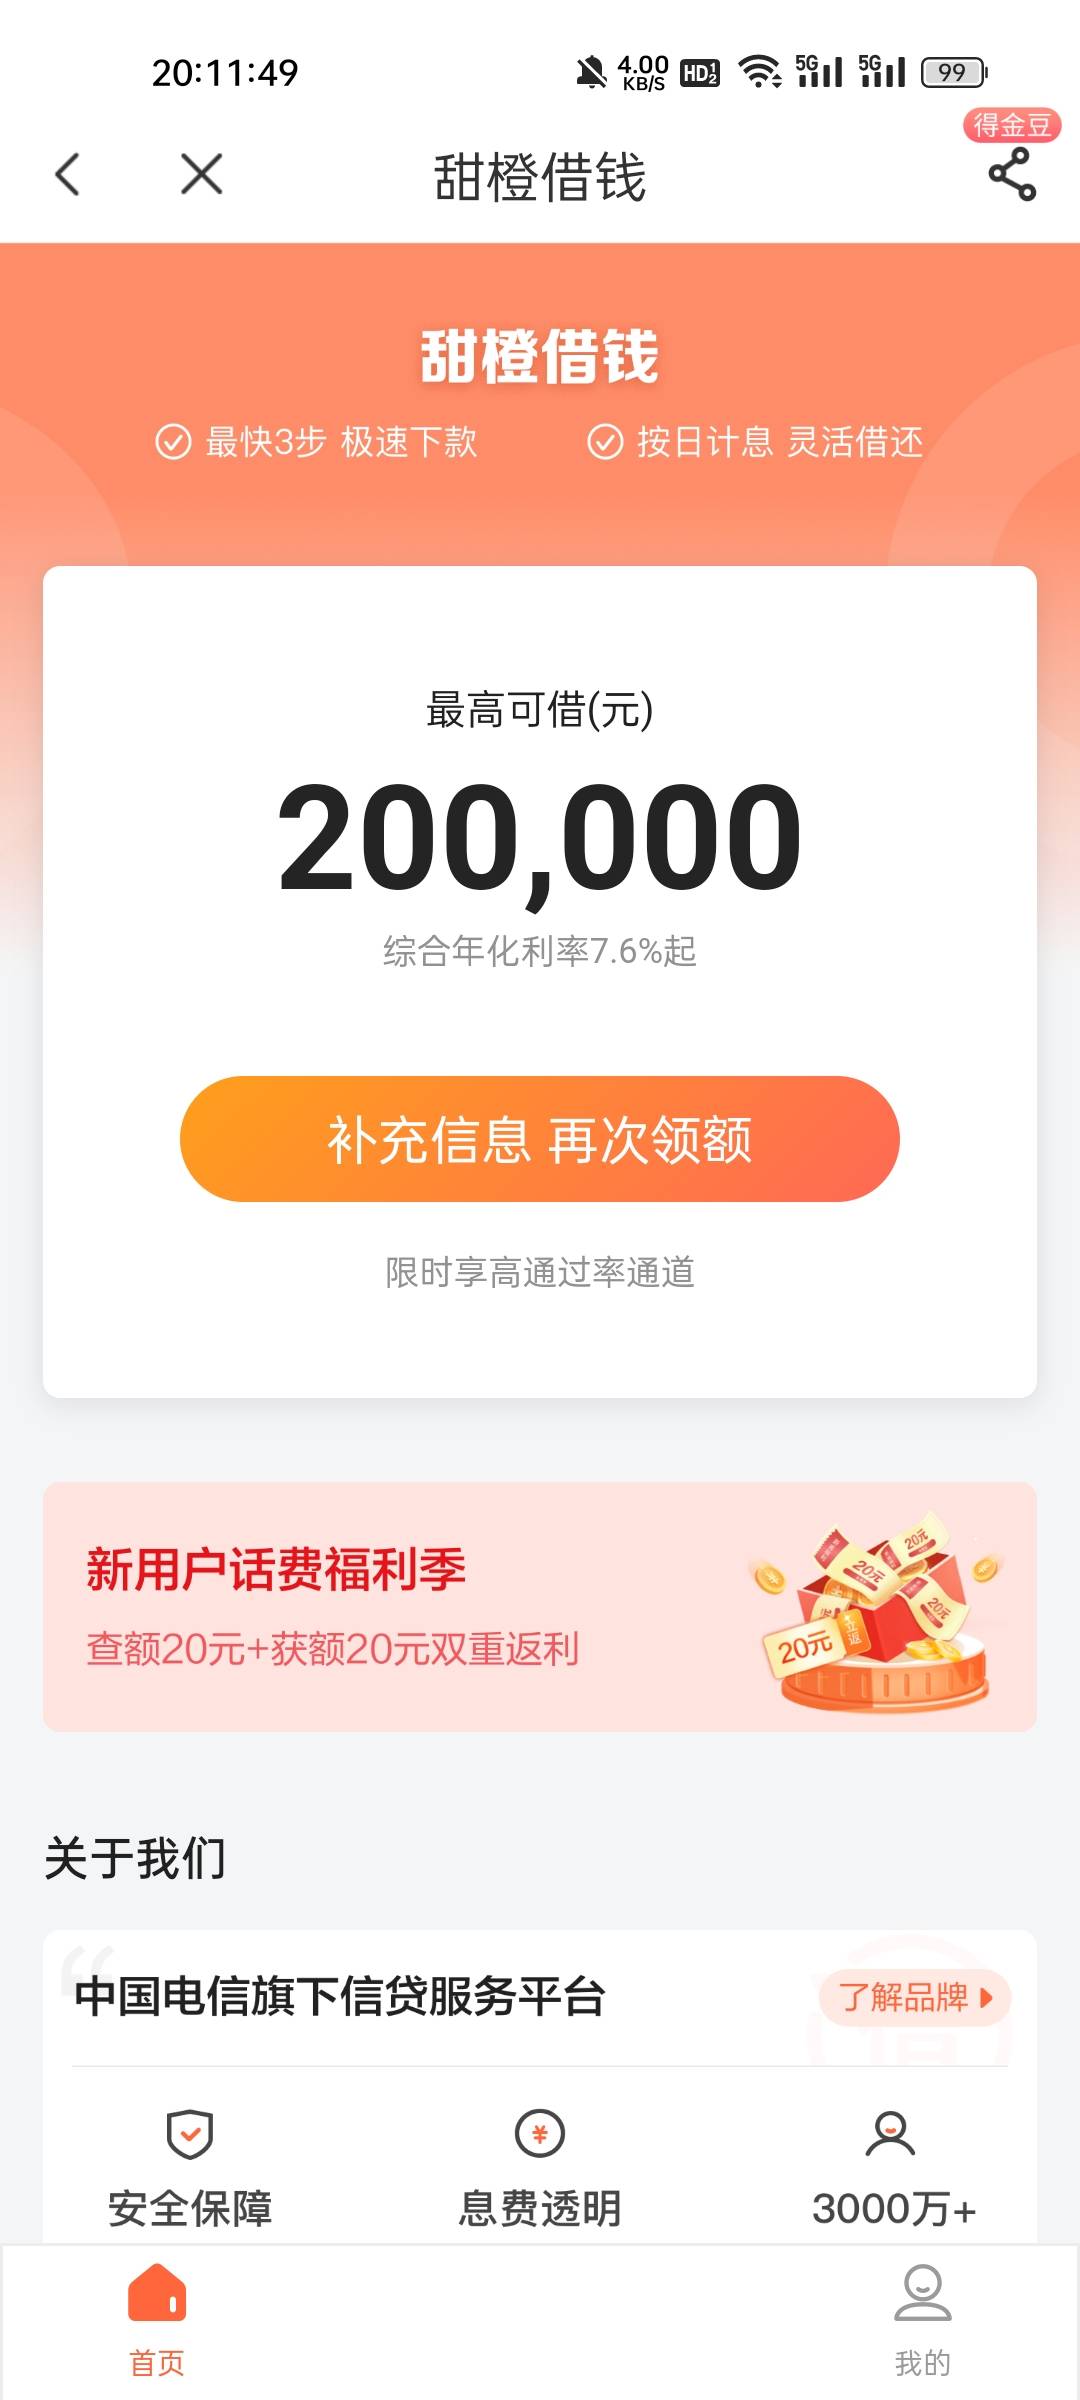 [福利在线]中国电信app 我的-领备用金 甜橙30-20话费券  我是注销重开的